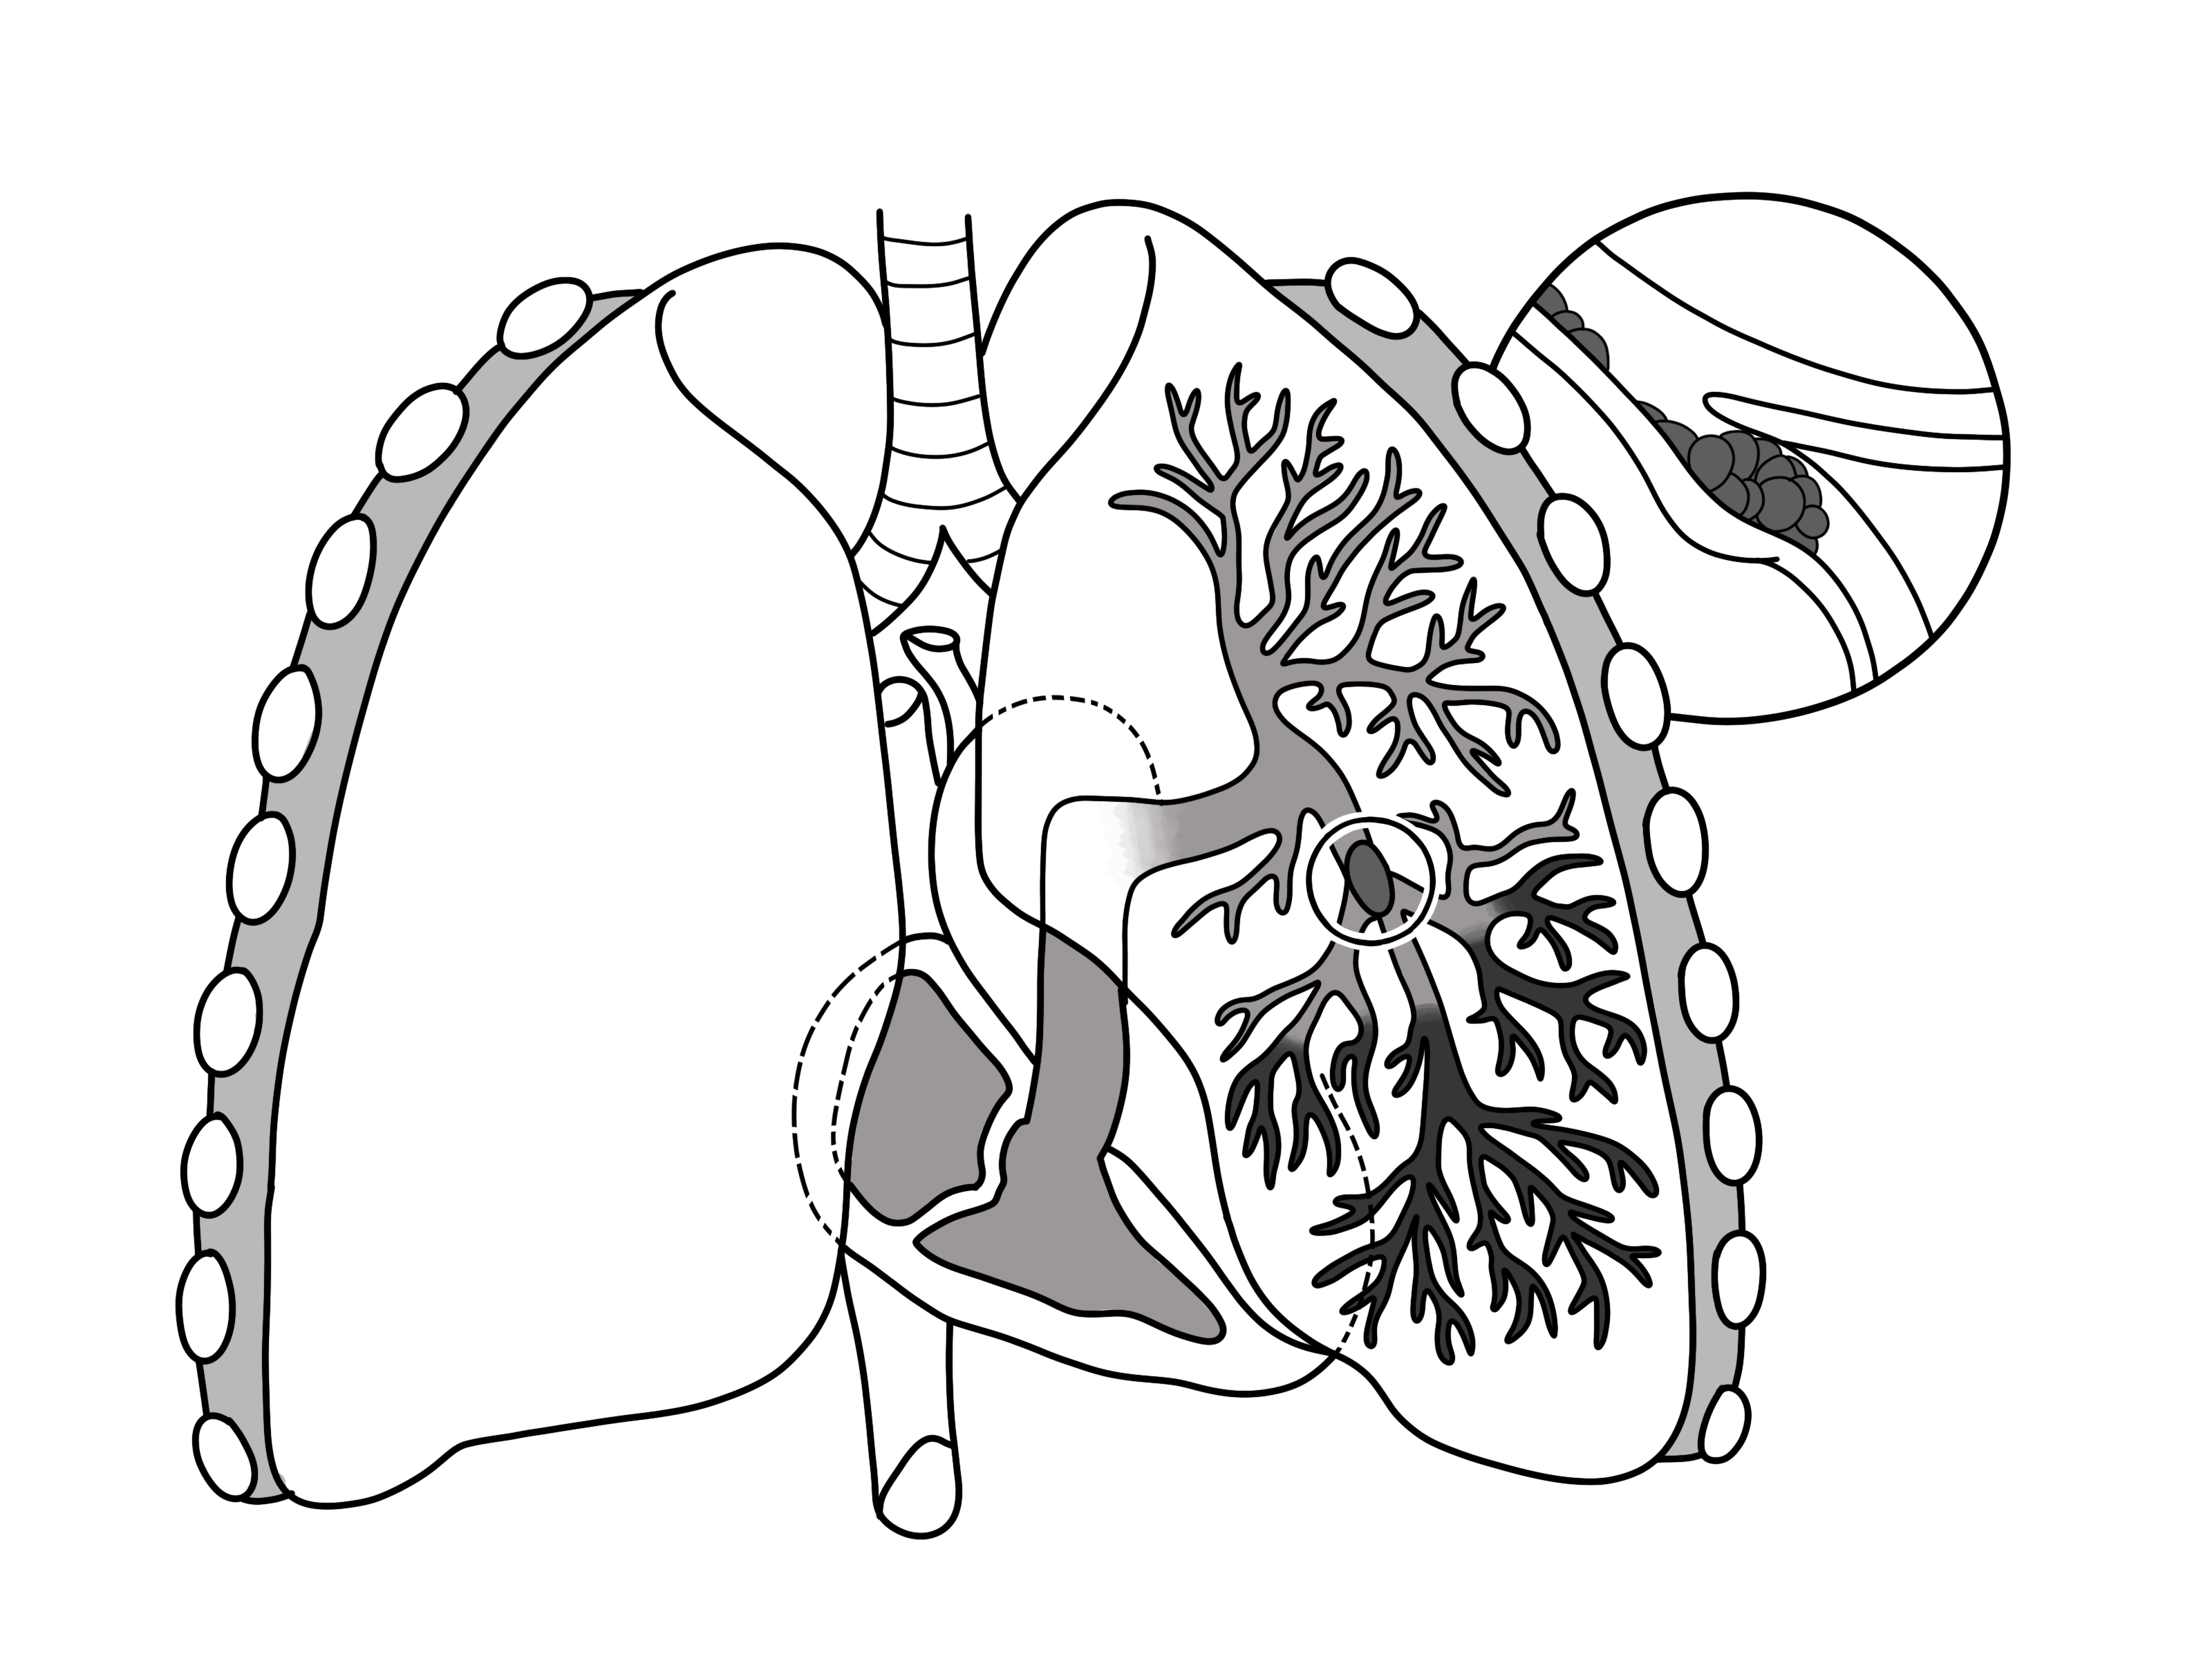 Pulmonary embolism - Wikipedia